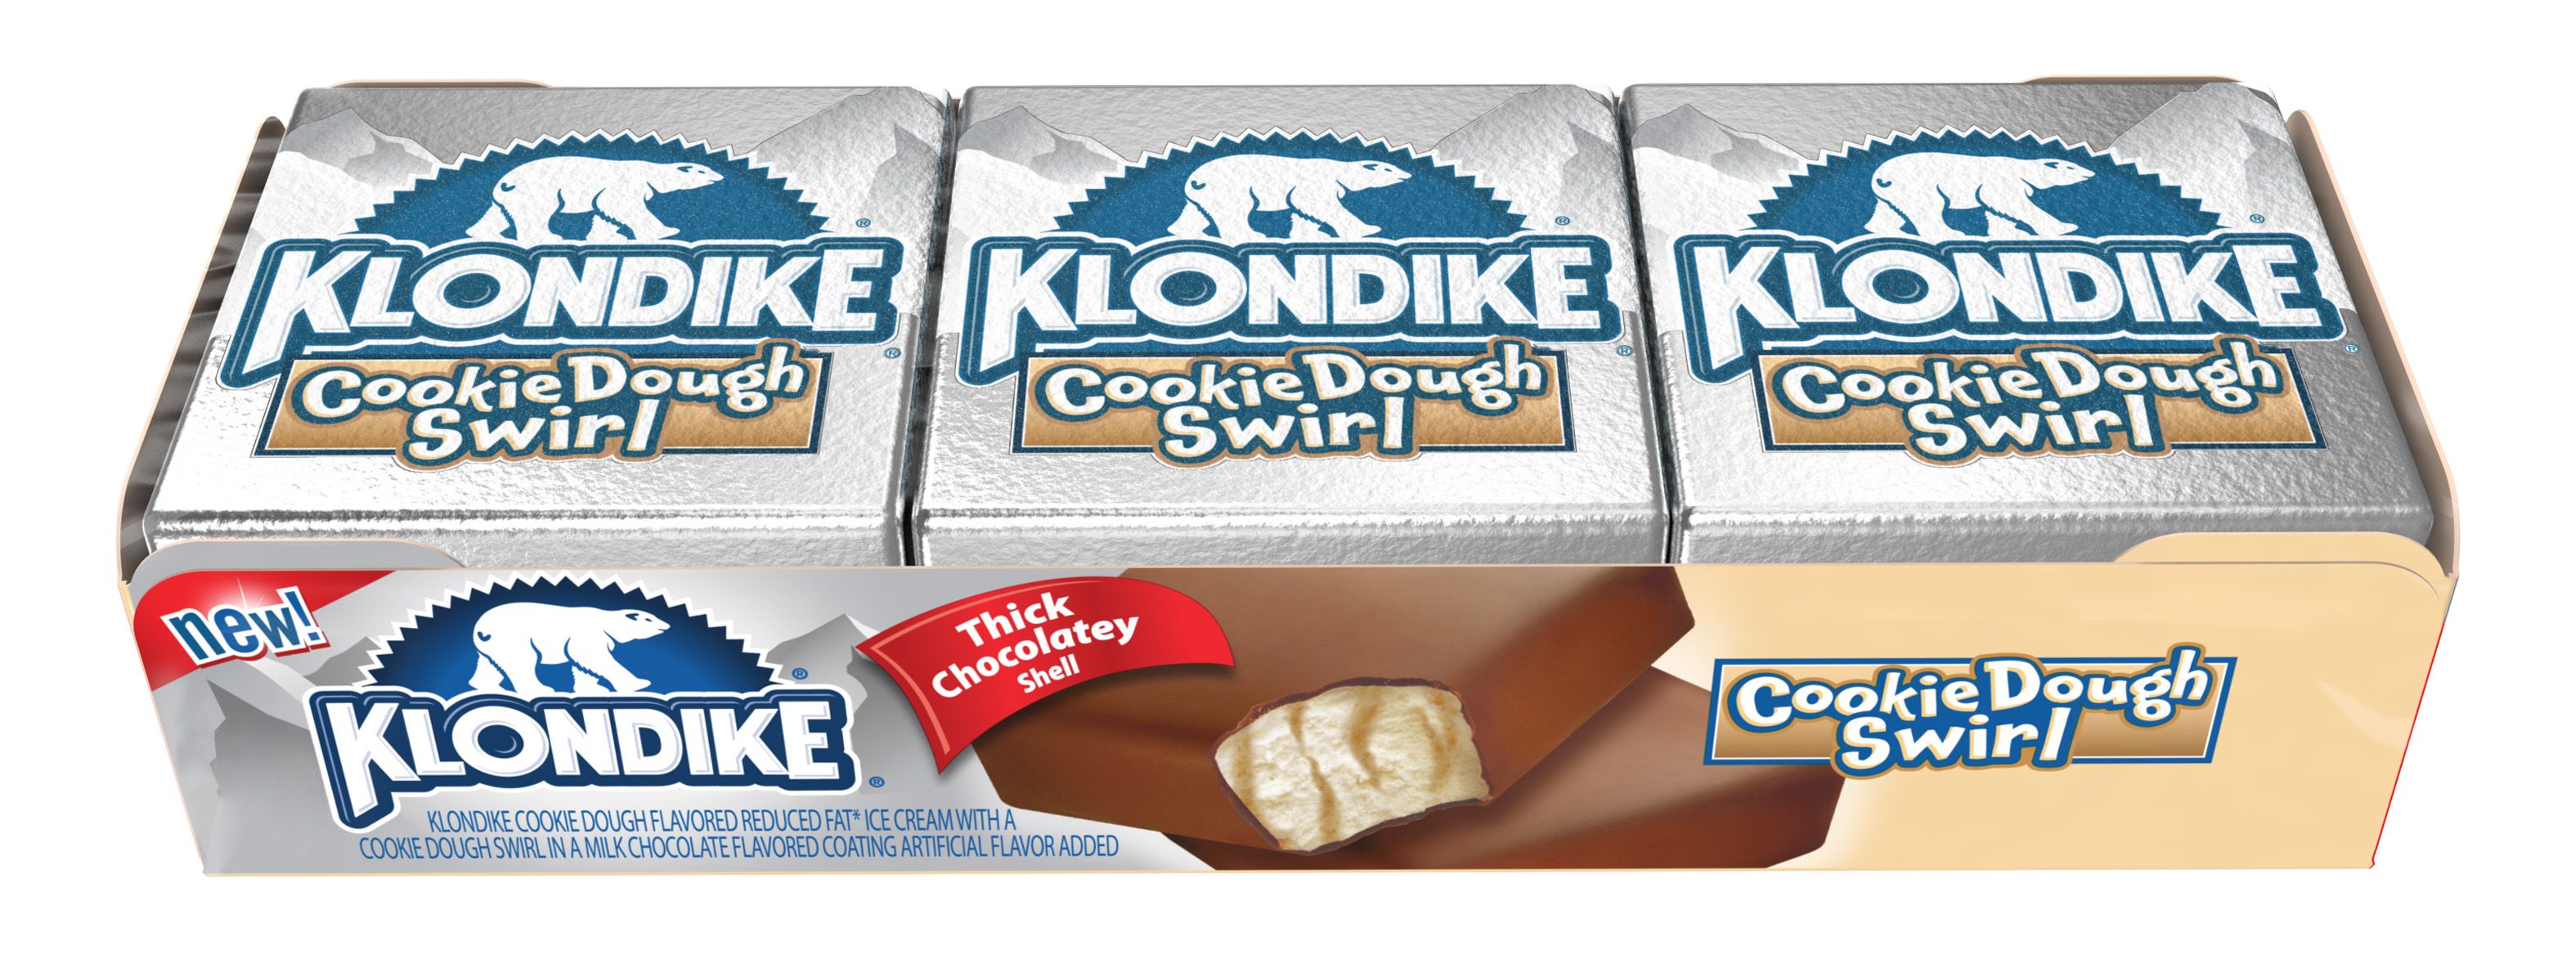 klondike bar flavors